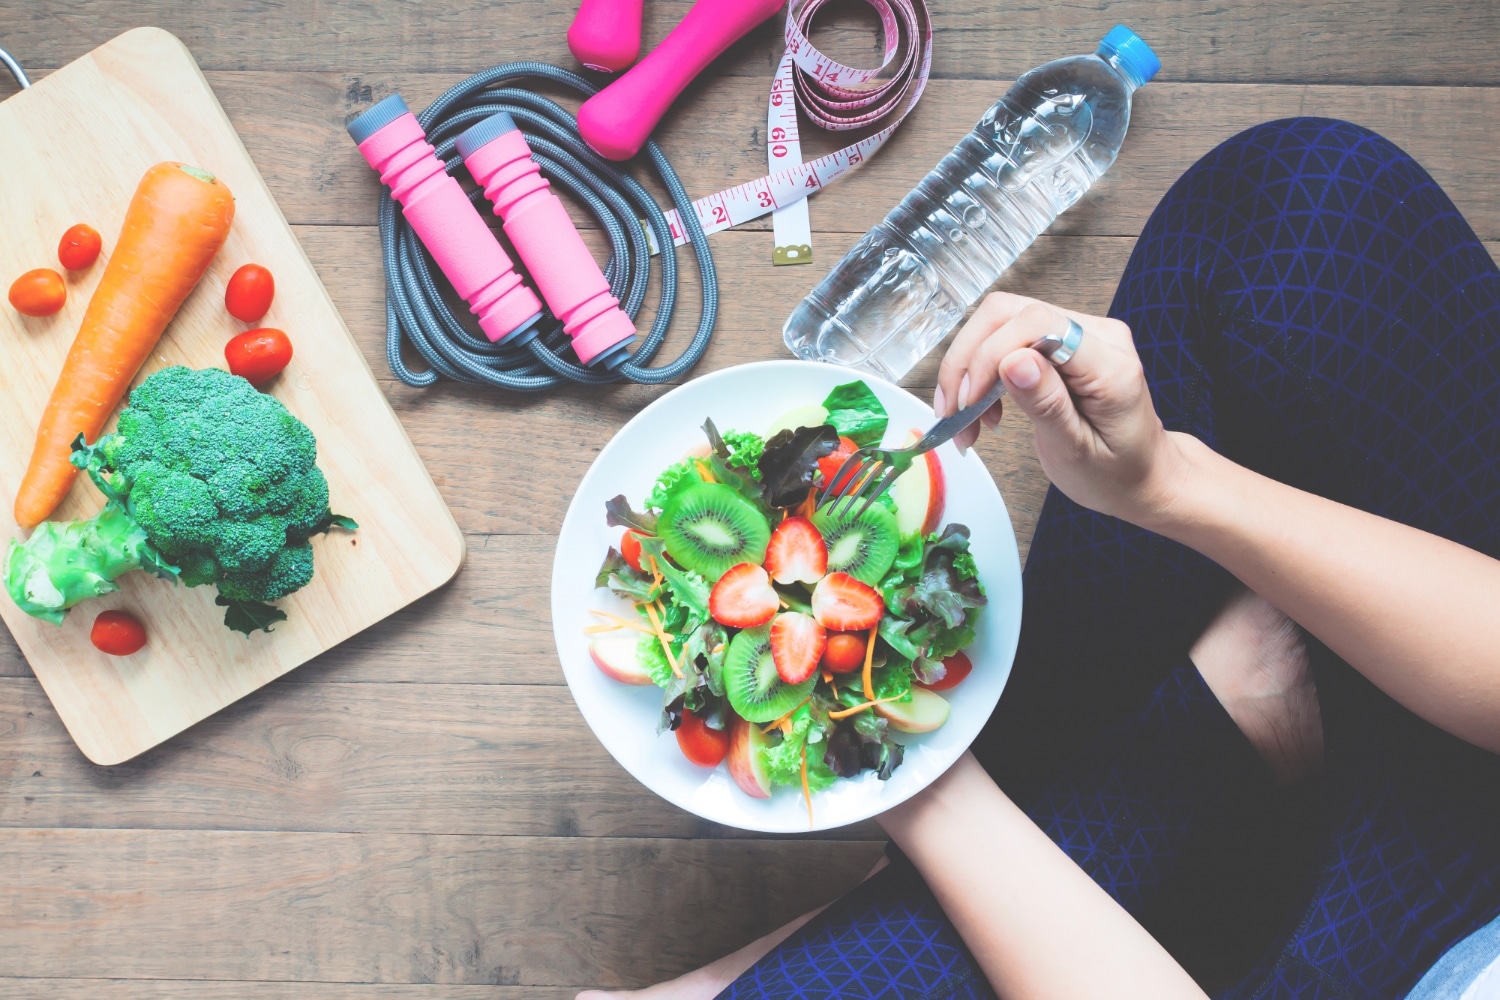 Une personne tenant une assiette contenant des aliments frais et sains, assise devant une corde à sauter, une bouteille d'eau, un mètre ruban et une planche avec des légumes.